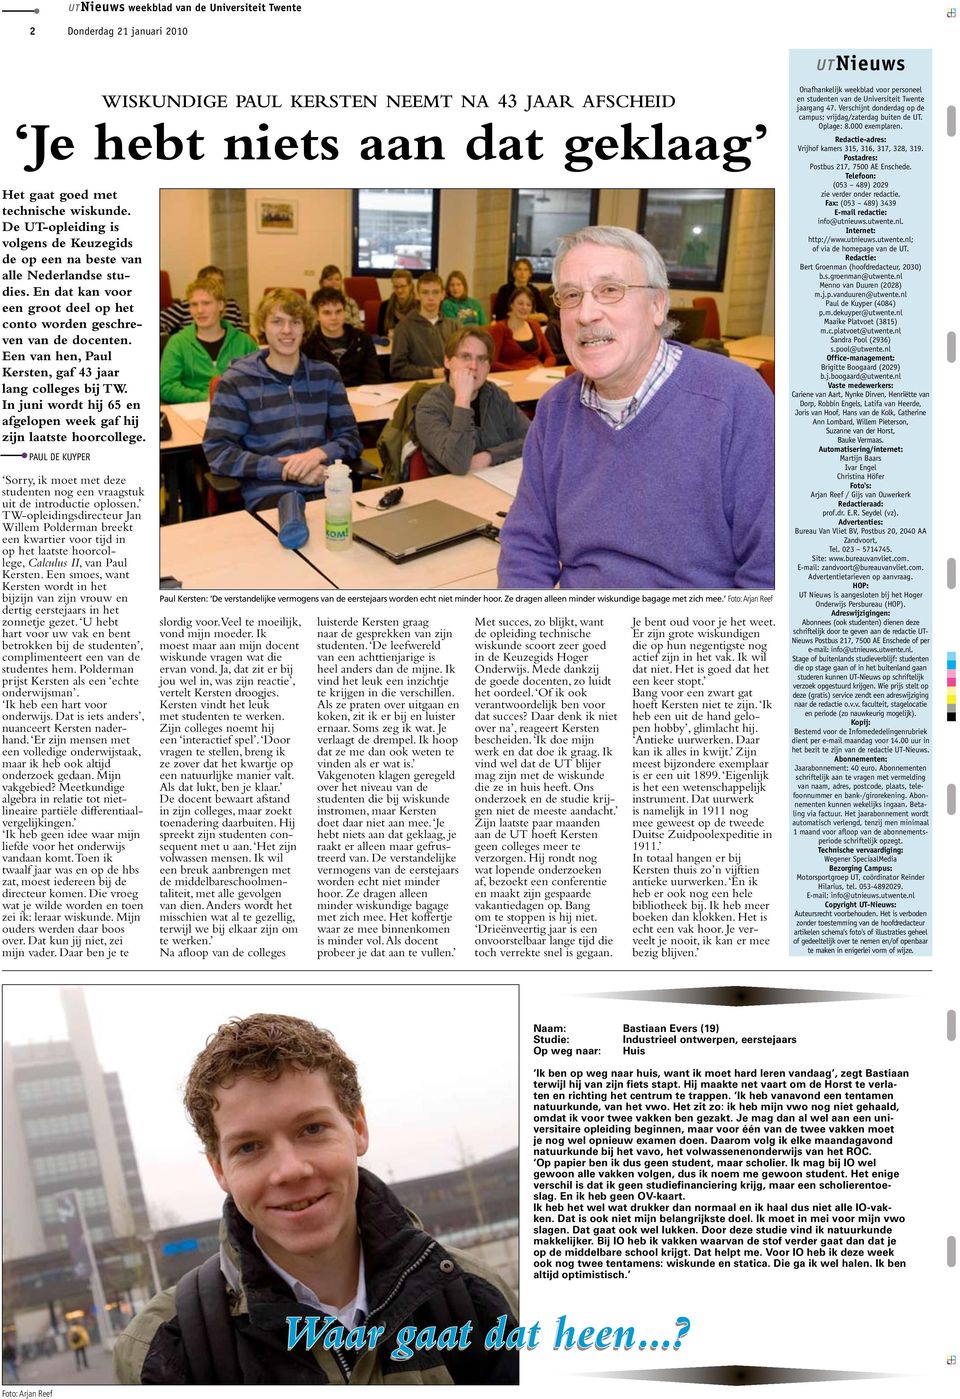 Een van hen, Paul Kersten, gaf 43 jaar lang colleges bij TW. In juni wordt hij 65 en afgelopen week gaf hij zijn laatste hoorcollege.